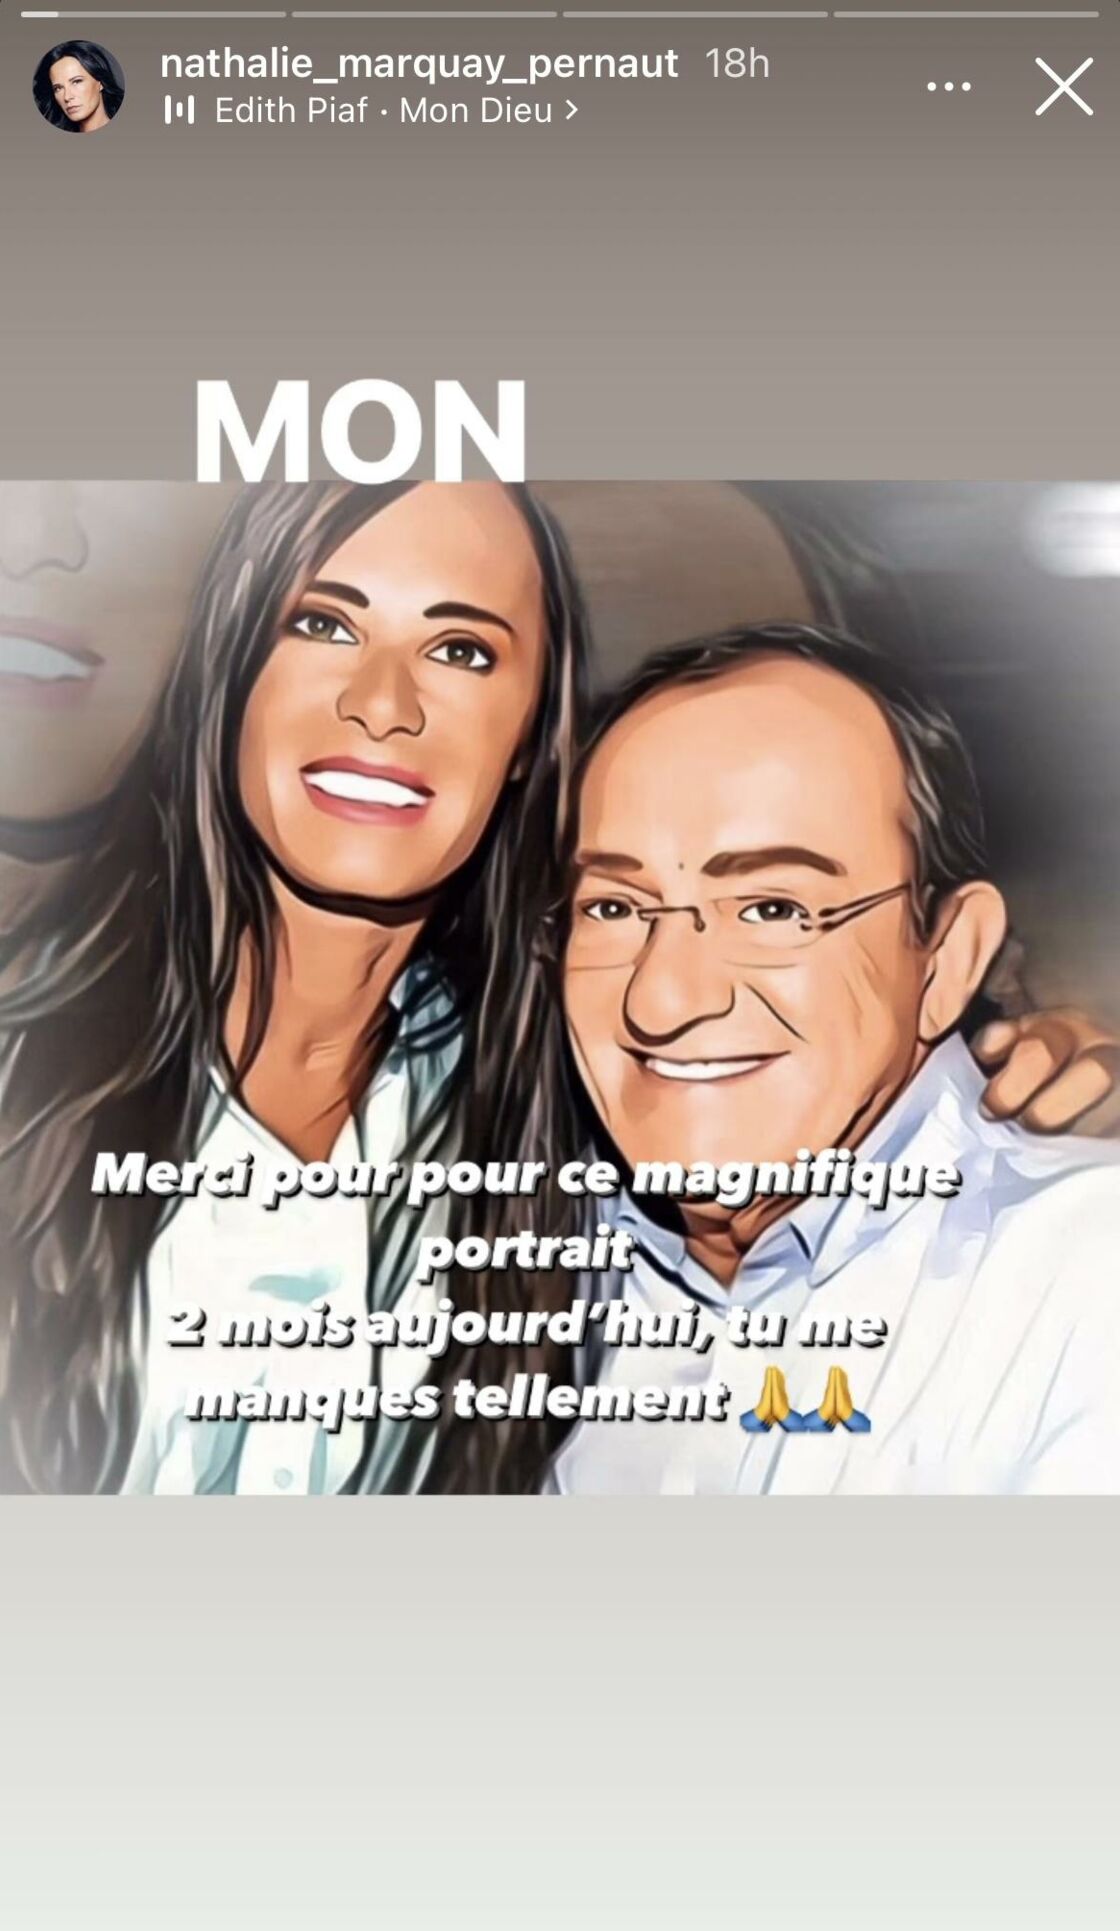 Photo de Jean-Pierre Pernaut et sa femme. | Photo : Story Instagram / nathalie_marquay_pernaut